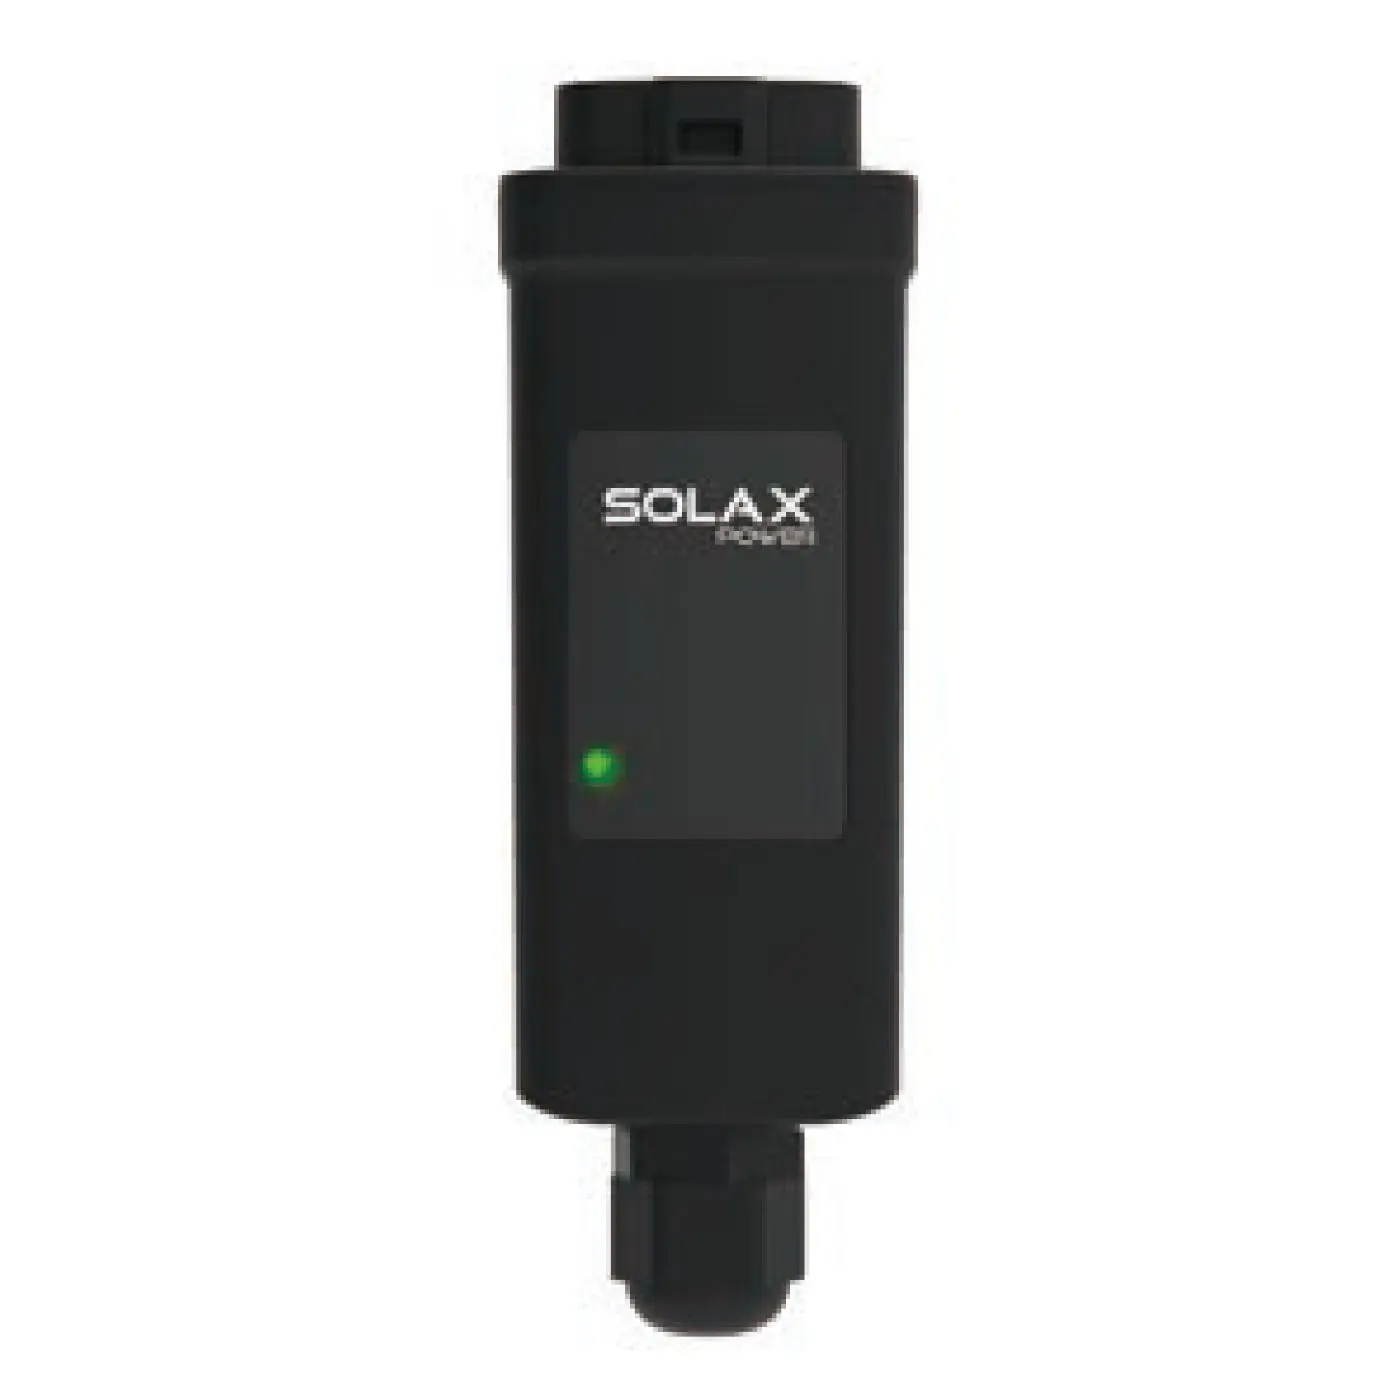 Solax Pocket LAN V3.0